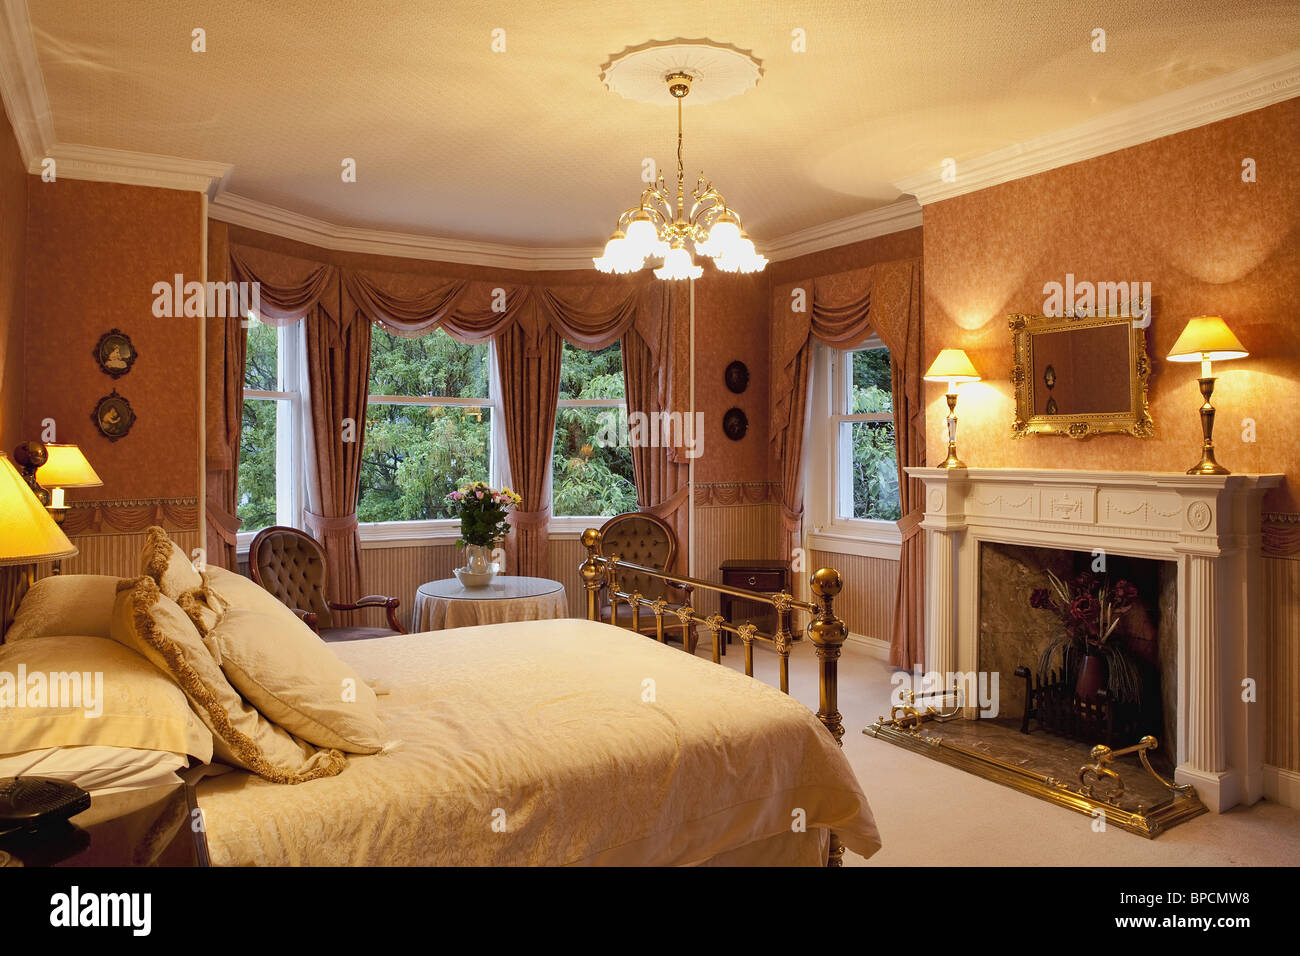 Luxus Victorian Schlafzimmer mit Kamin Stockfotografie - Alamy